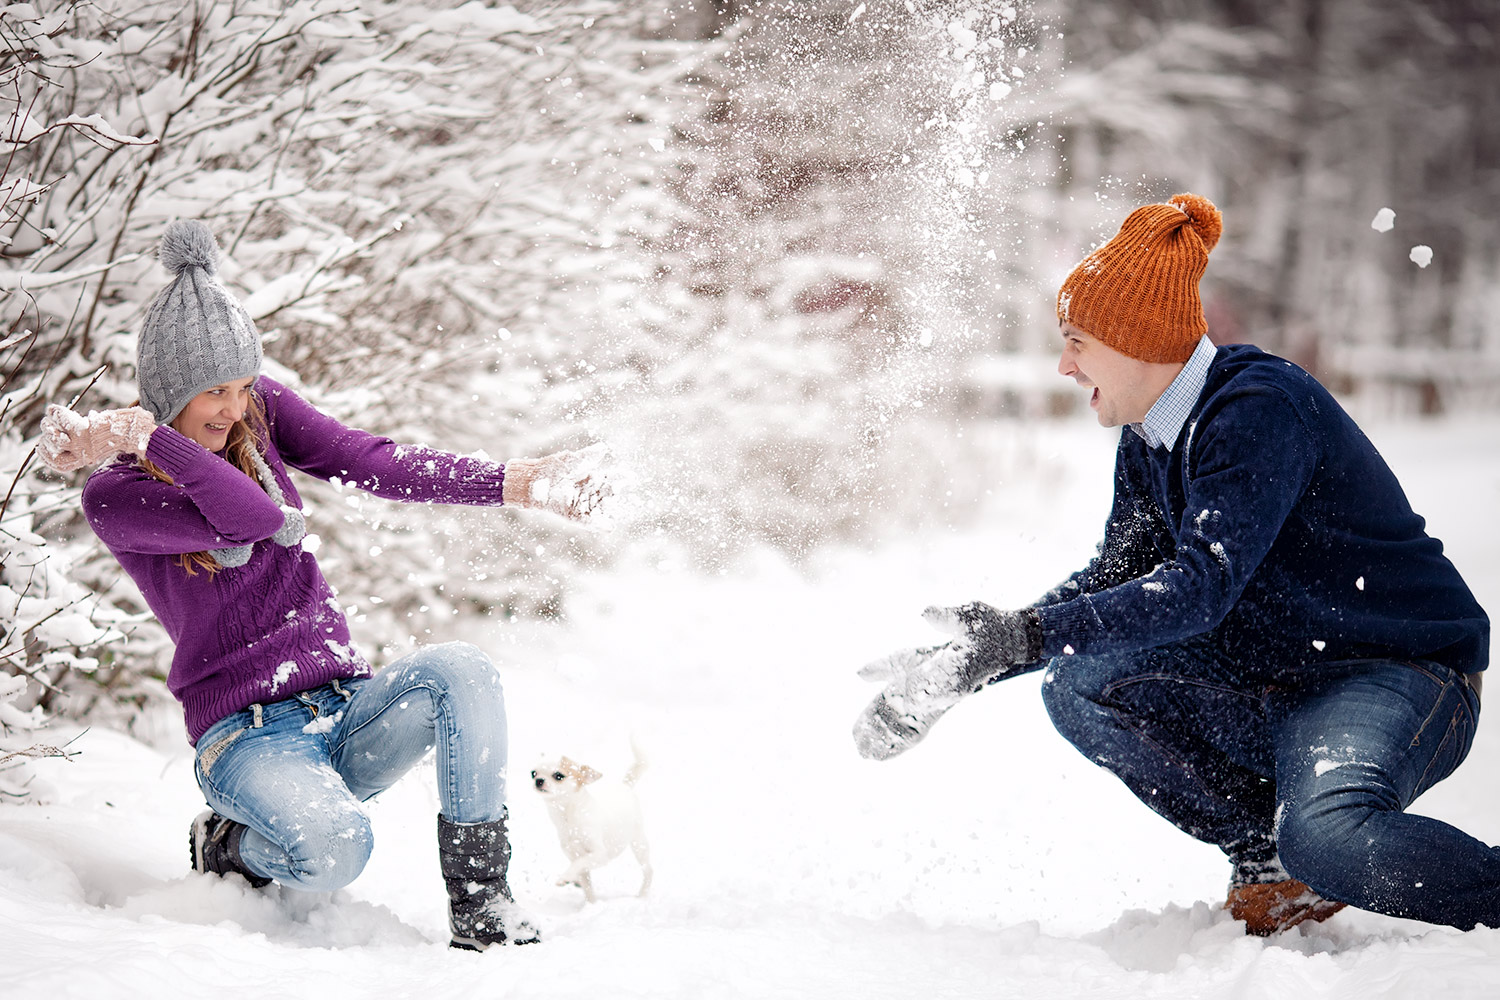 Играть в снежки кататься. Игра в снежки. Зима радость. Люди зимой. Фотосессия зимой на улице.